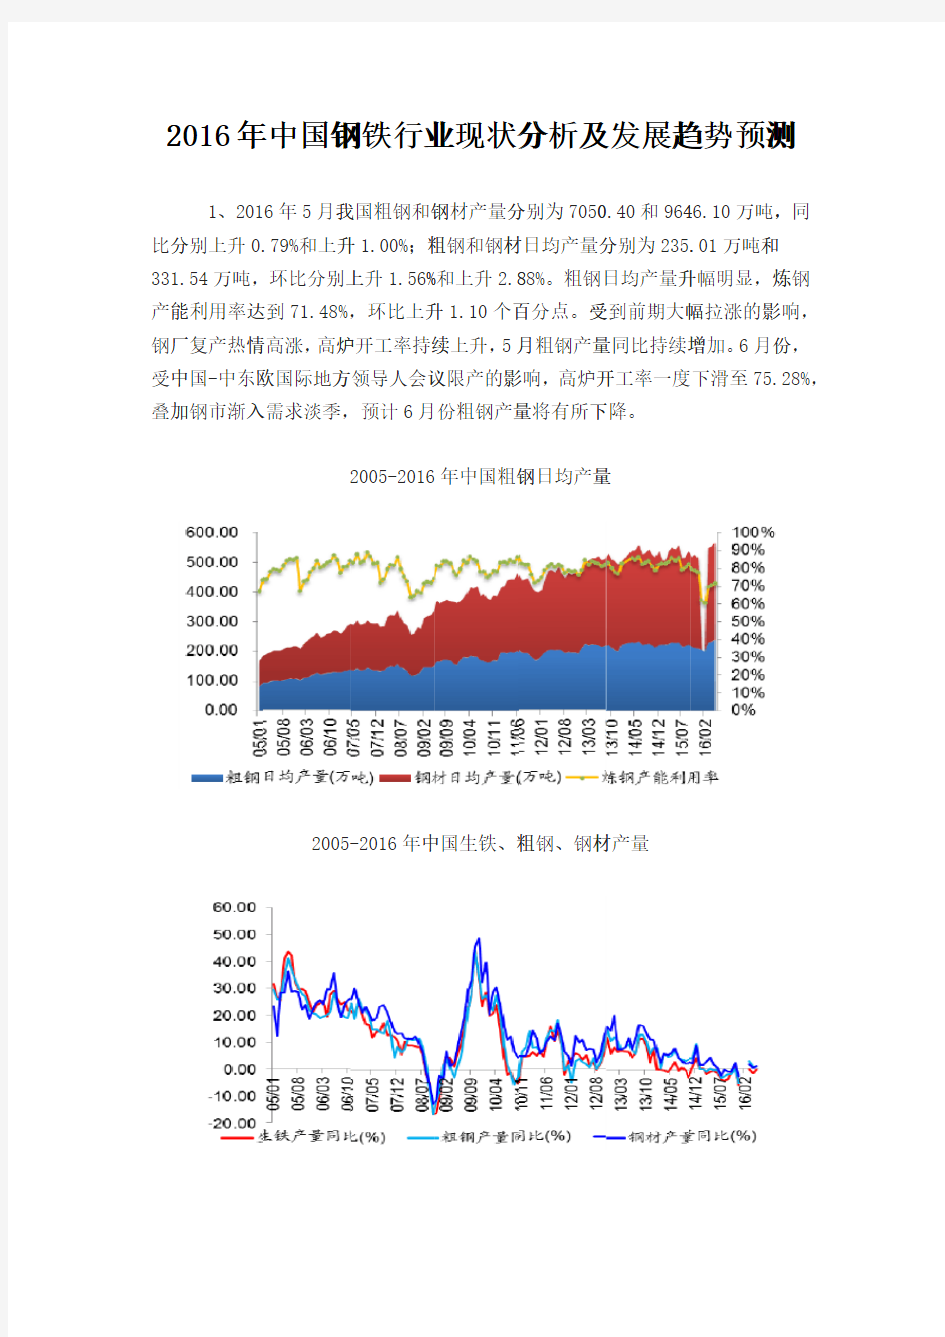 (仅供参考)2016年中国钢铁行业现状分析及发展趋势预测